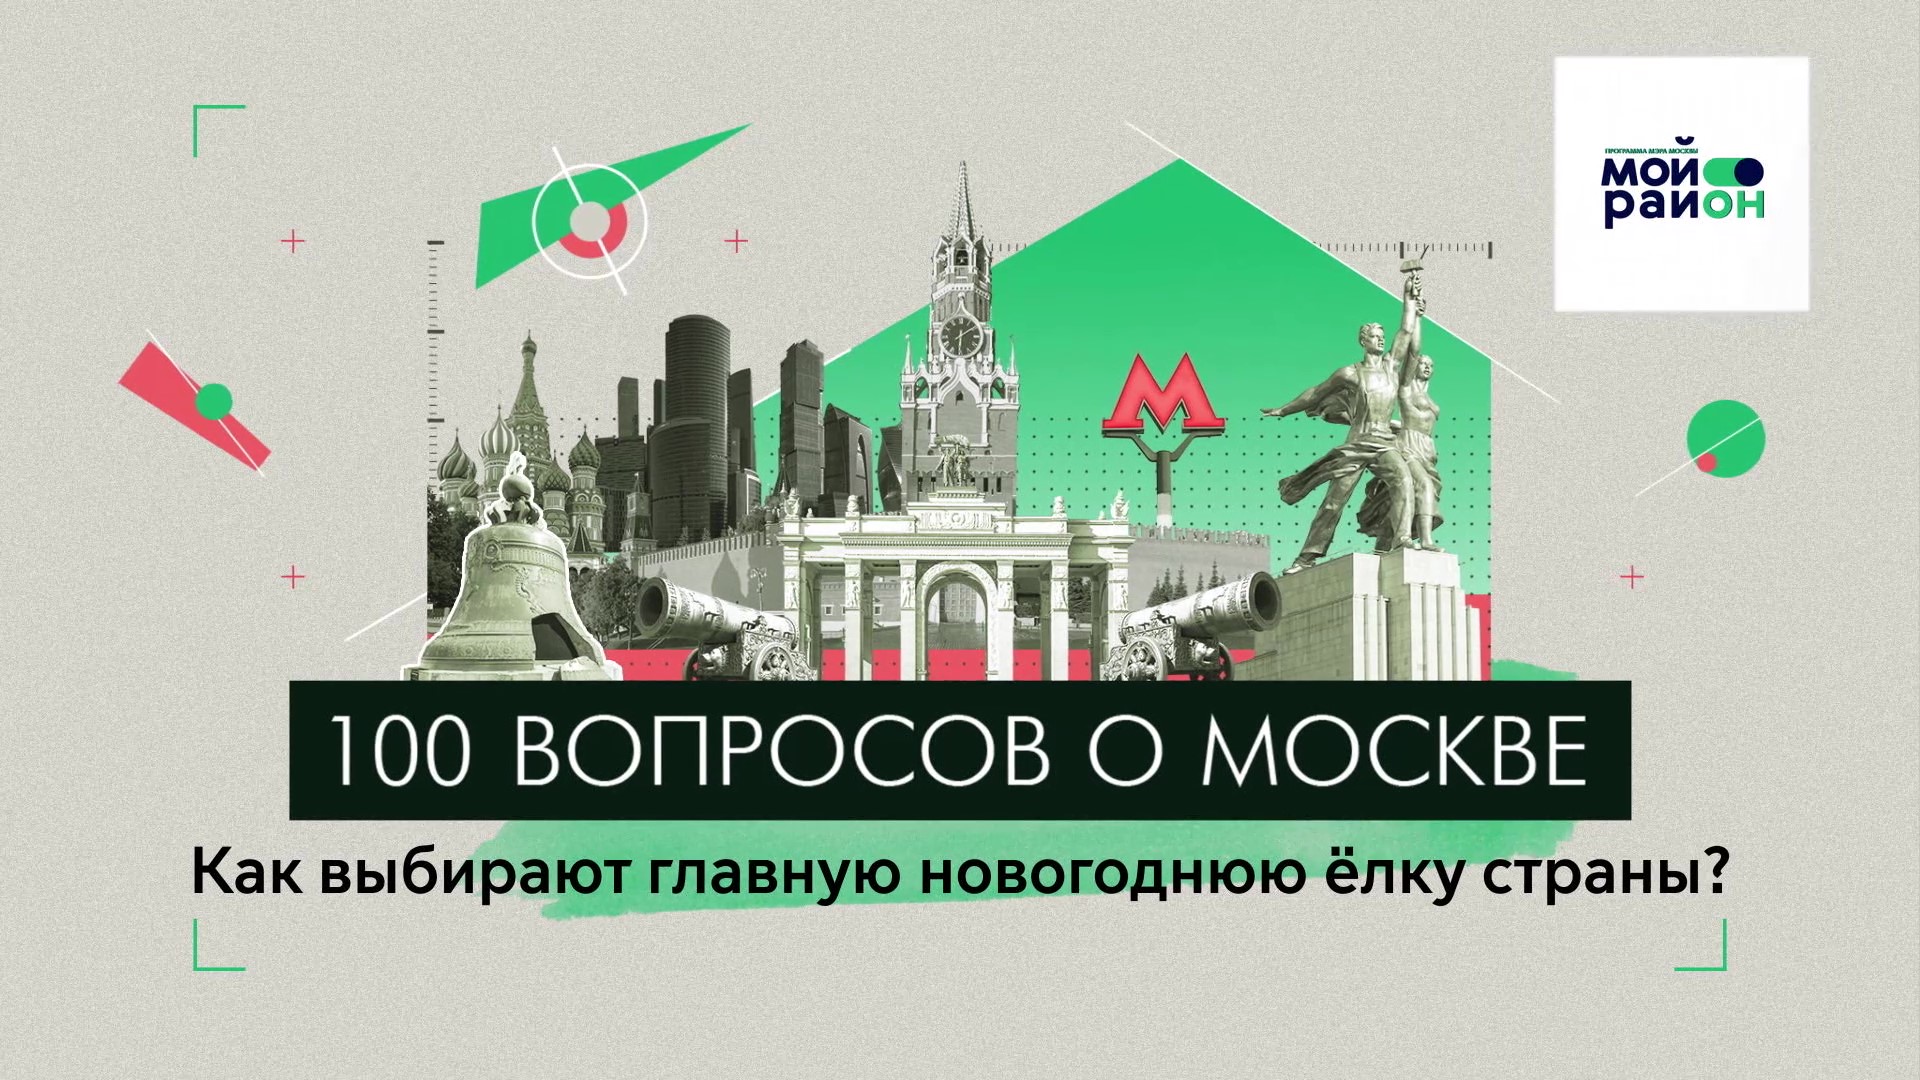 100 вопросов о Москве: Как выбирают главную новогоднюю ёлку страны?